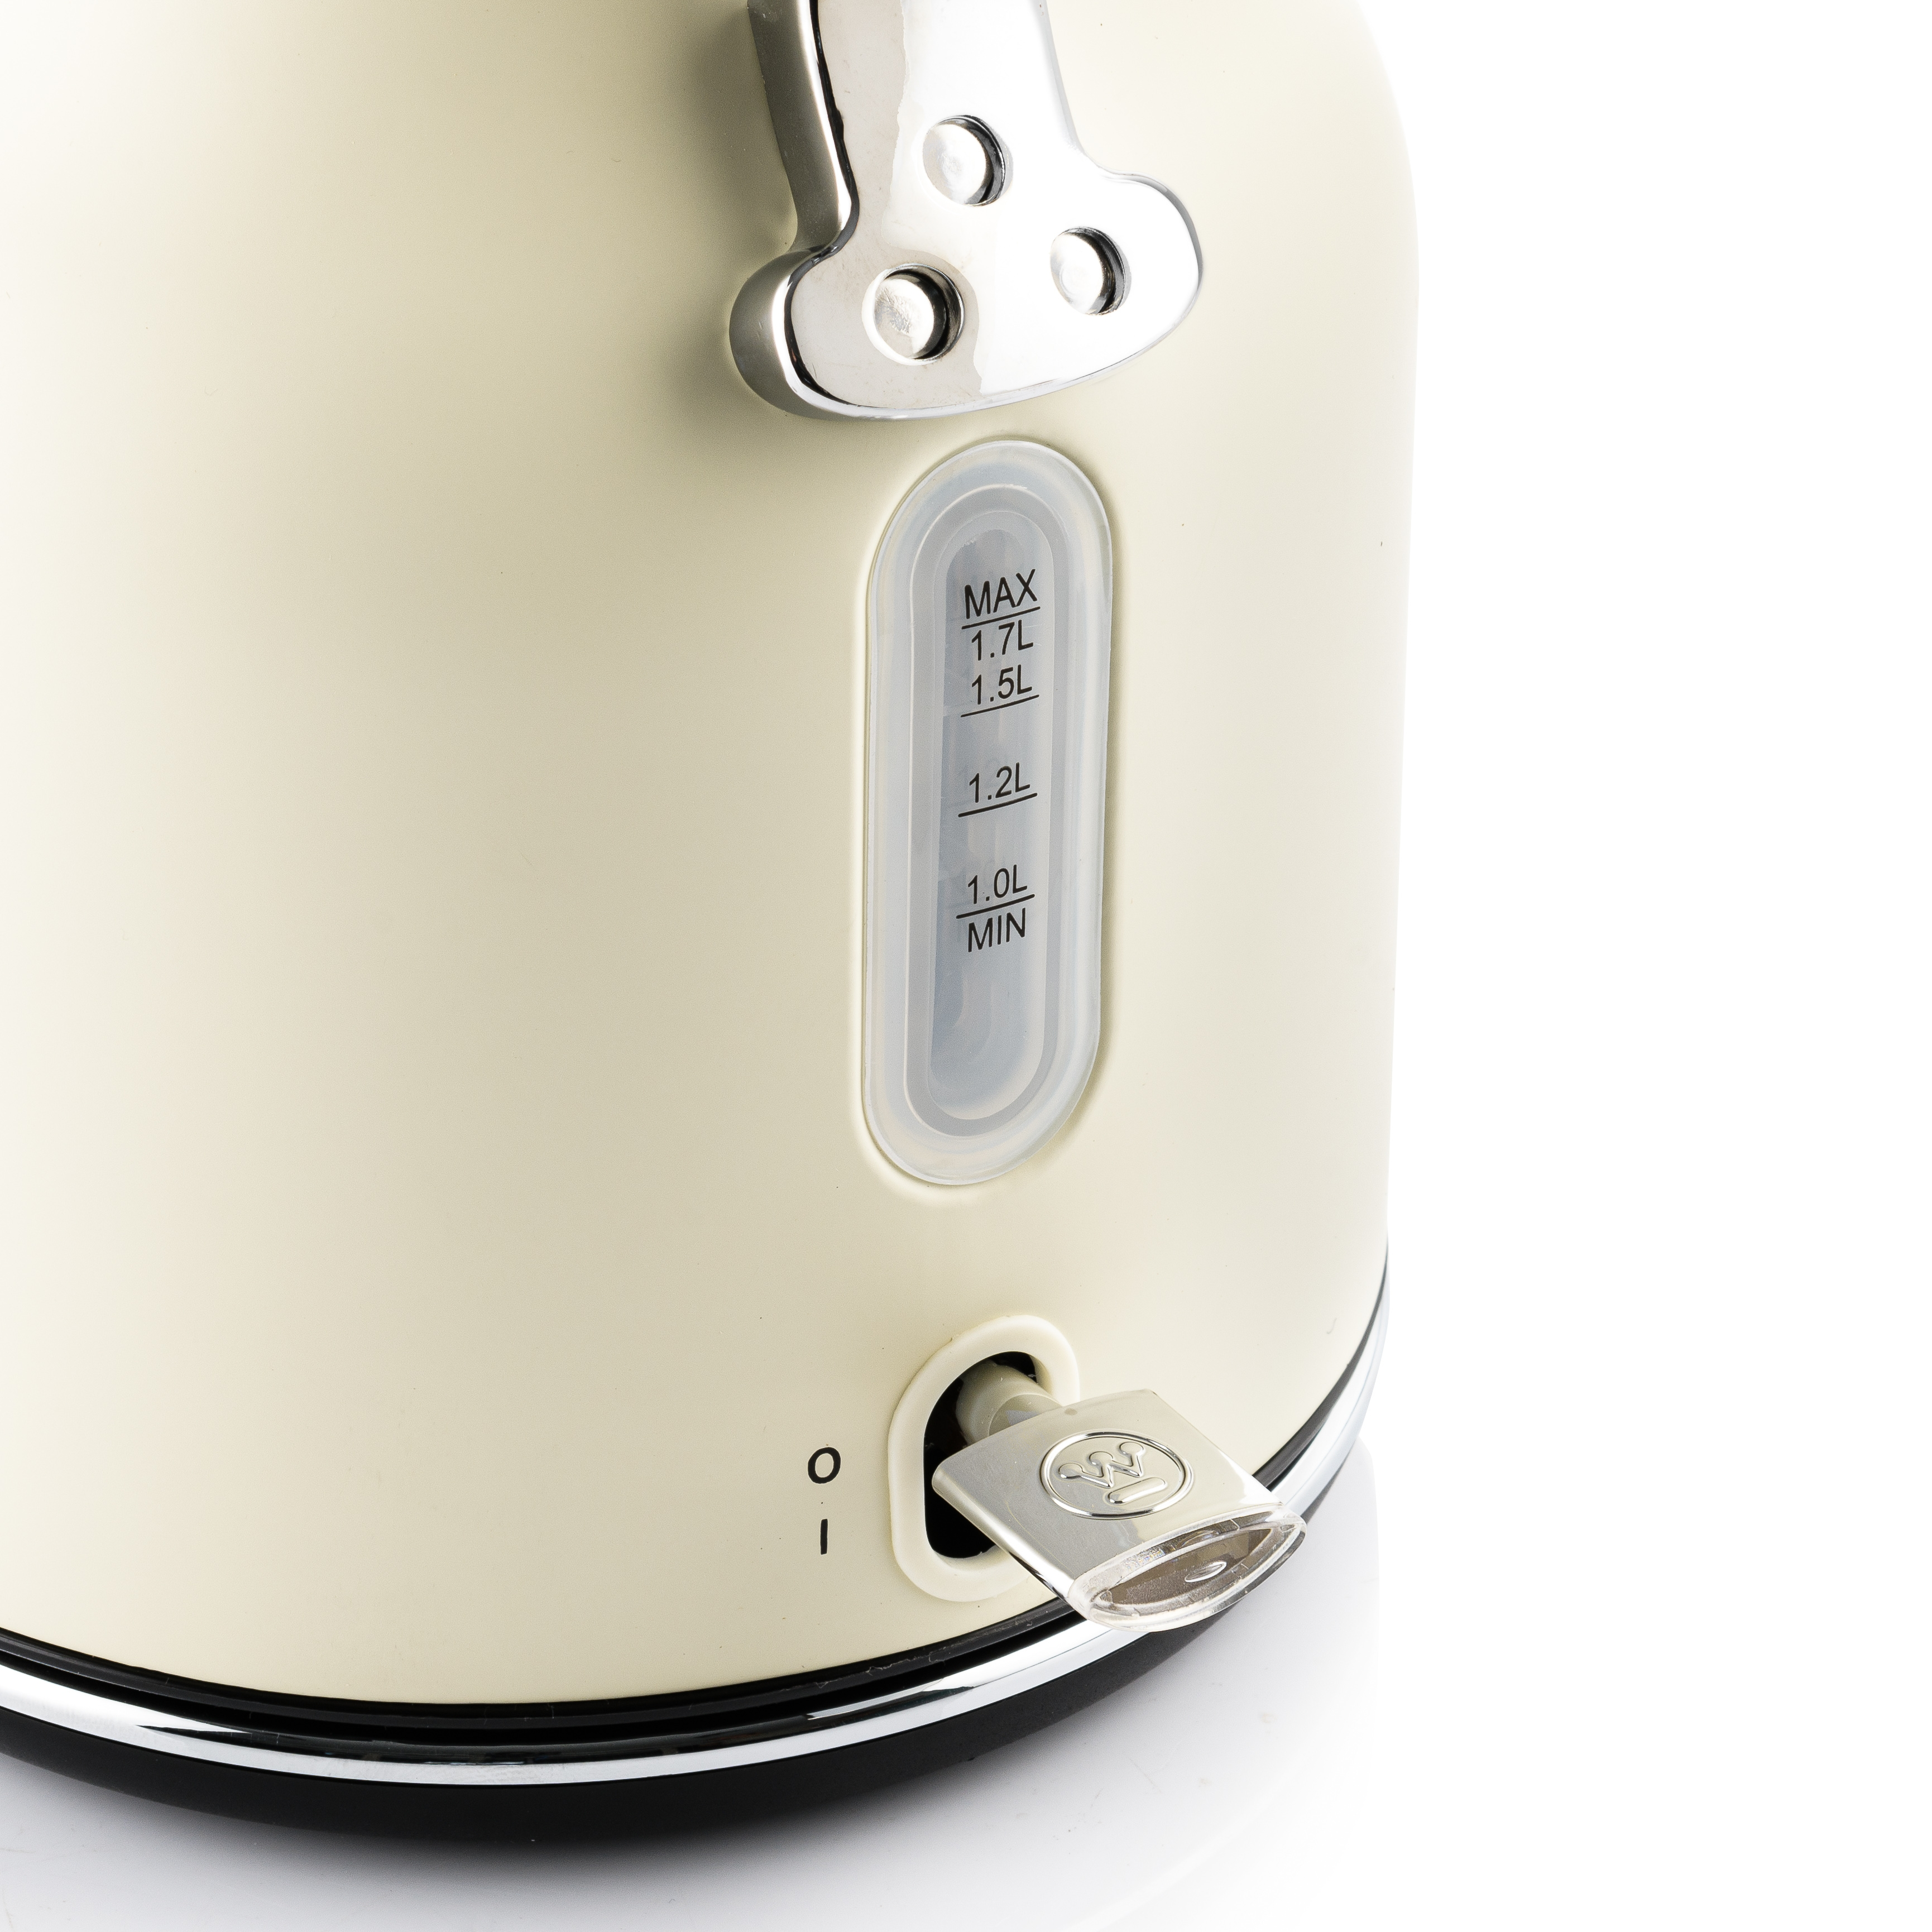 WESTINGHOUSE WES06 Wasserkocher Toaster Set Watt, cremeweiß 4) (1750 Schlitze